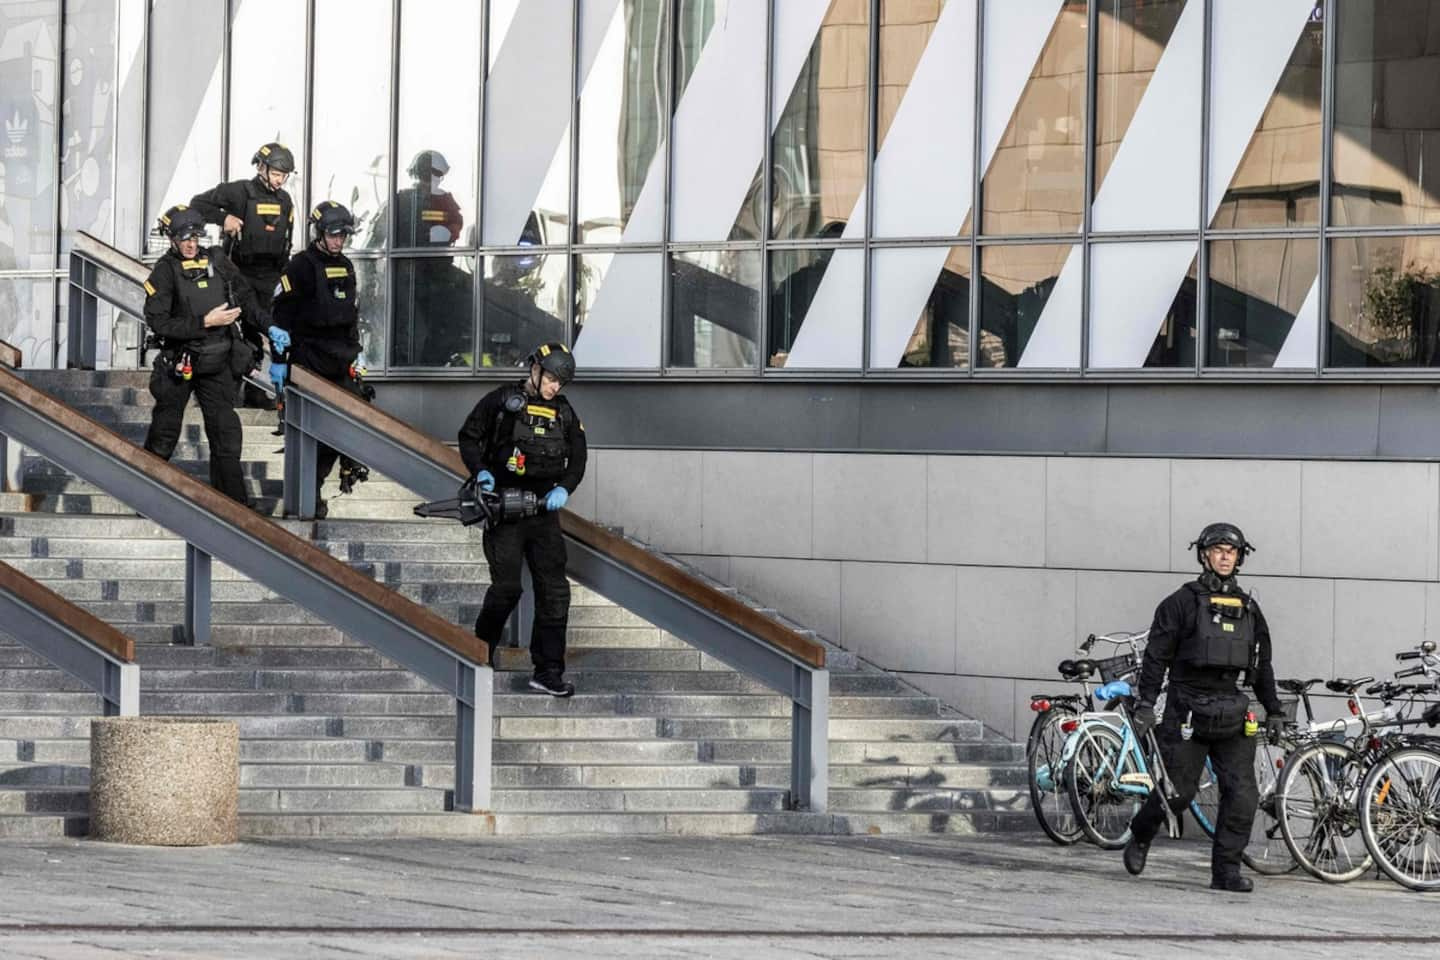 Shooting in Copenhagen: Alleged shooter has psychiatric history